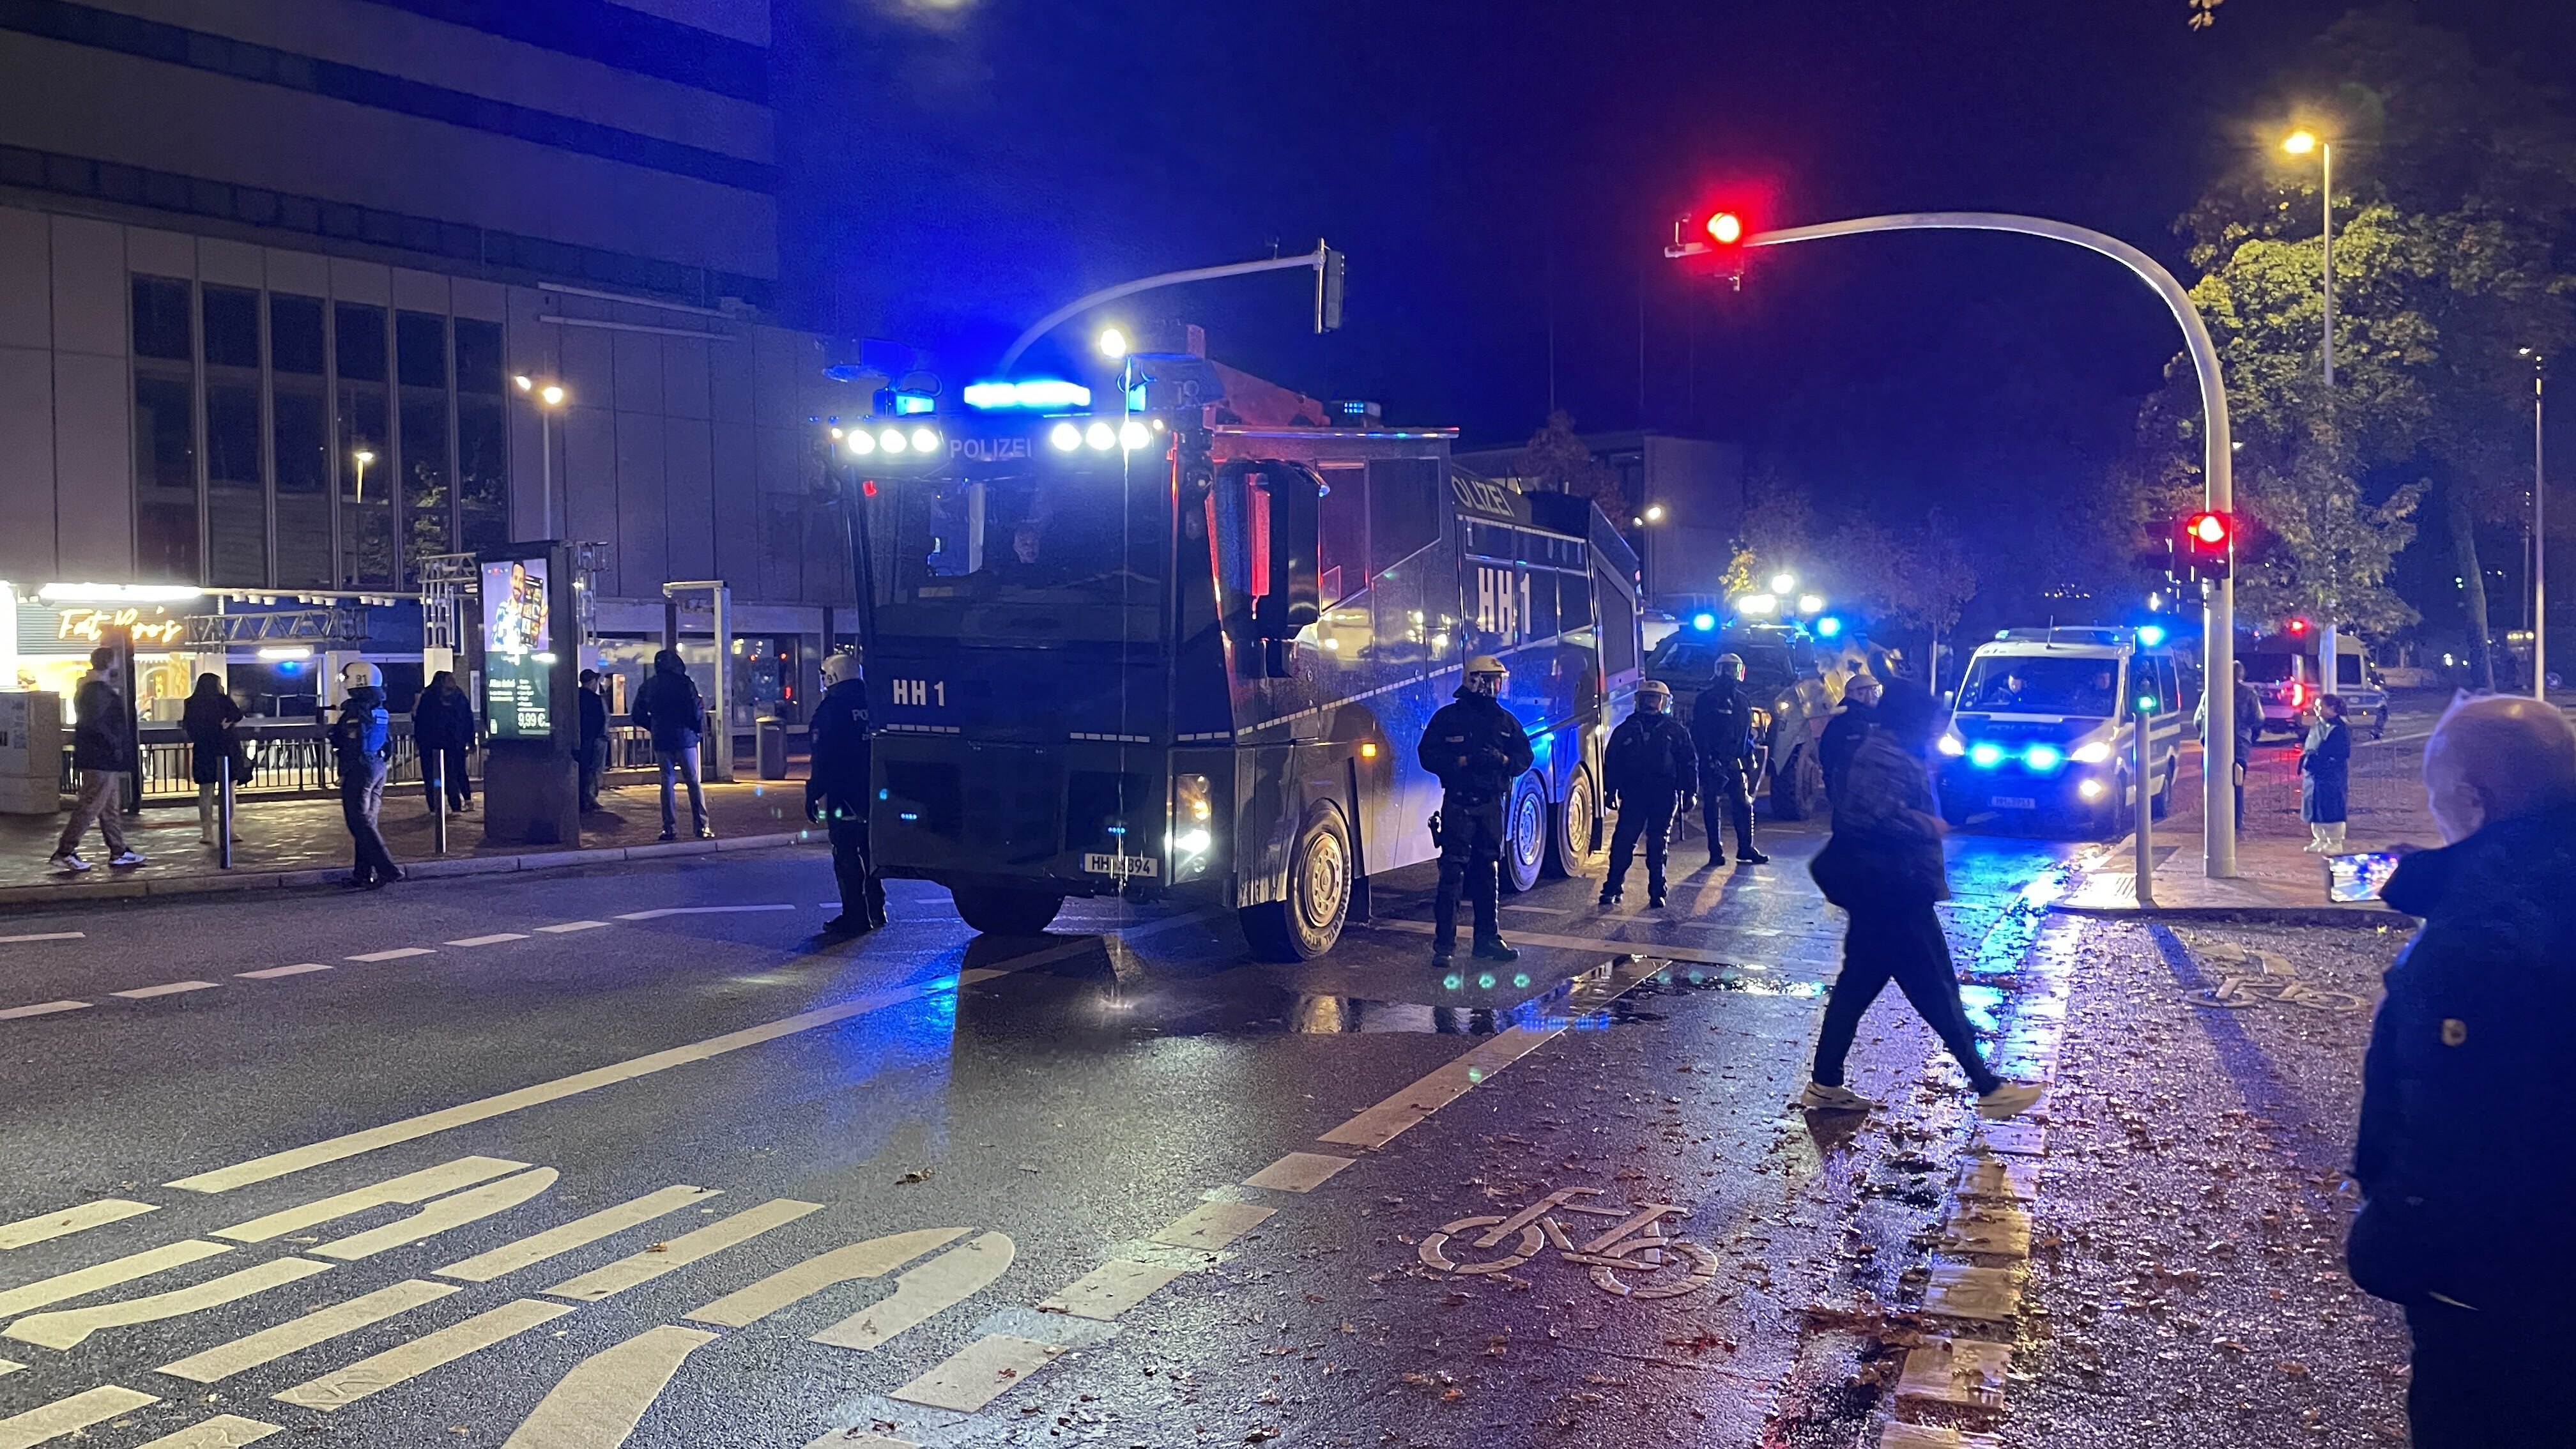 Krawalle in Hamburg - Polizei setzt Wasserwerfer ein